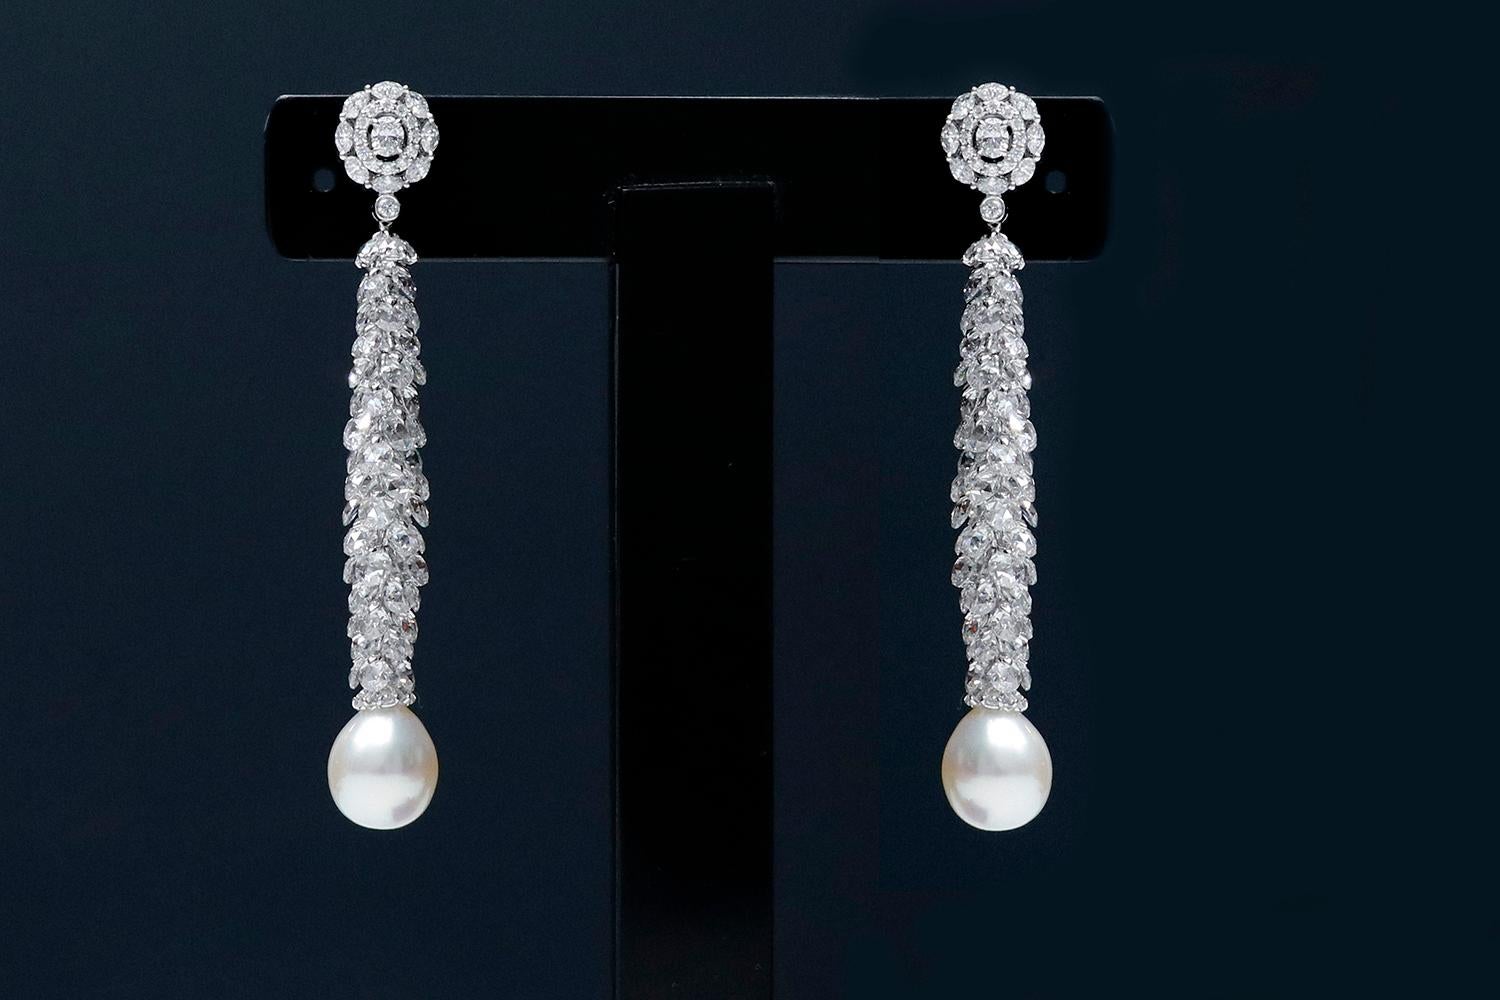 cocktail-Ohrringe aus 18 Karat Weißgold mit 14,64 Karat Diamanten und Perlen

Dies ist ein äußerst fantasievolles Paar Perlen-Ohrringe. Die Konzeption dieses Designs ist inspiriert von der weihnachtlichen Fraser-Tanne, die auf den Kopf gestellt und